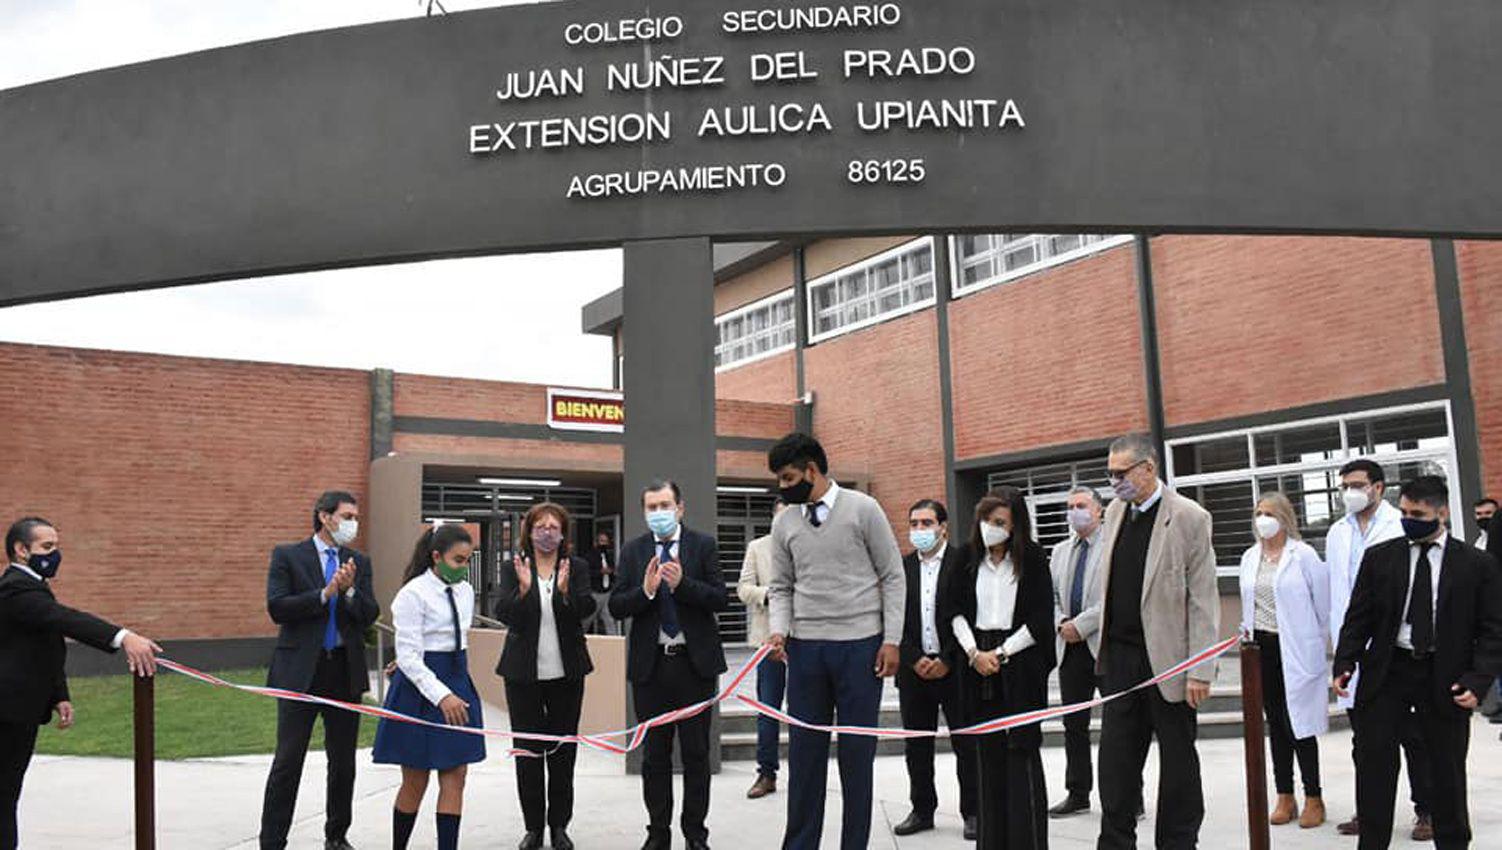 El gobernador Zamora inauguroacute el nuevo colegio secundario de Upianita